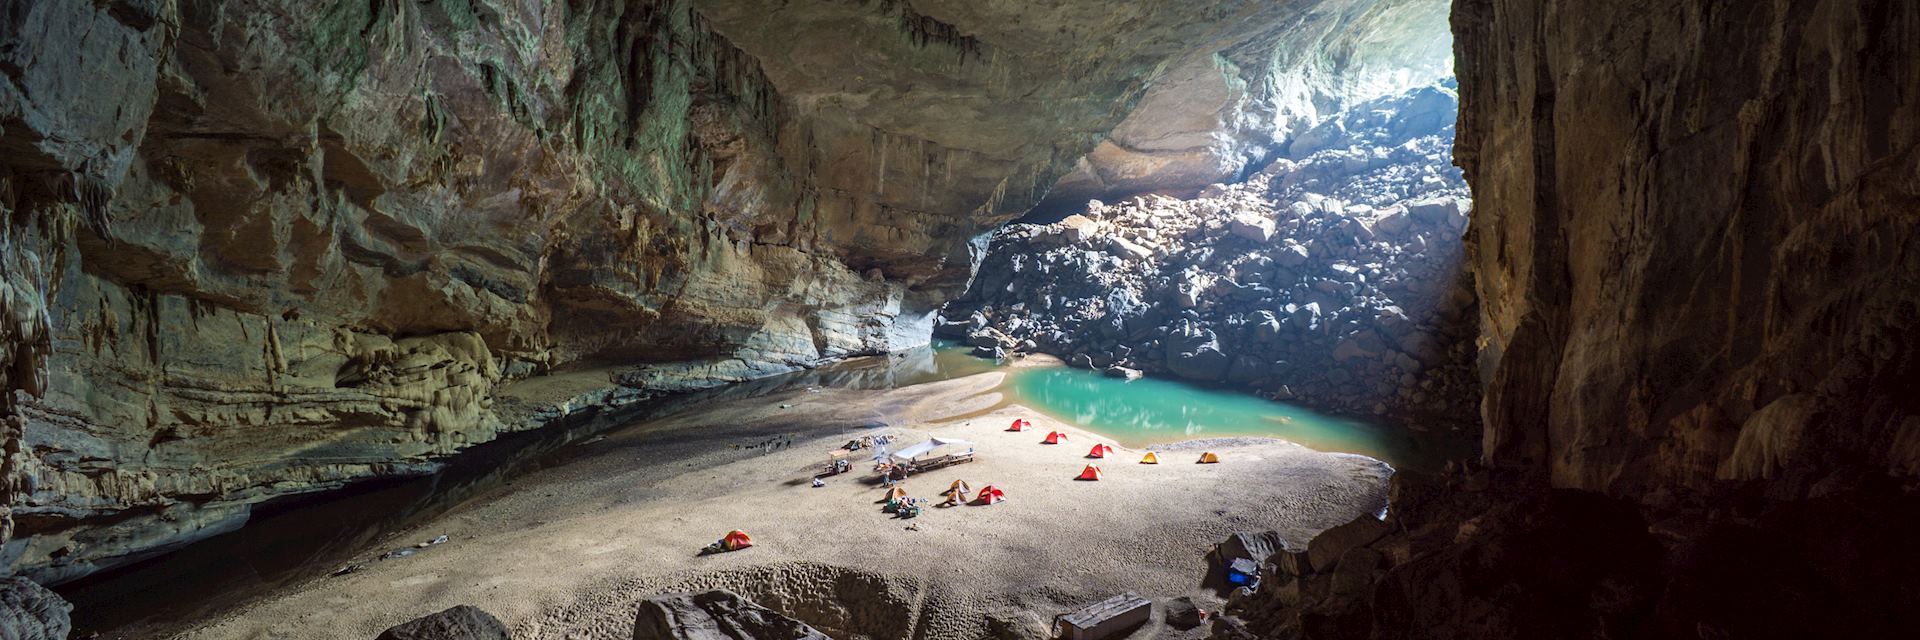 Campsite at Hang En caves